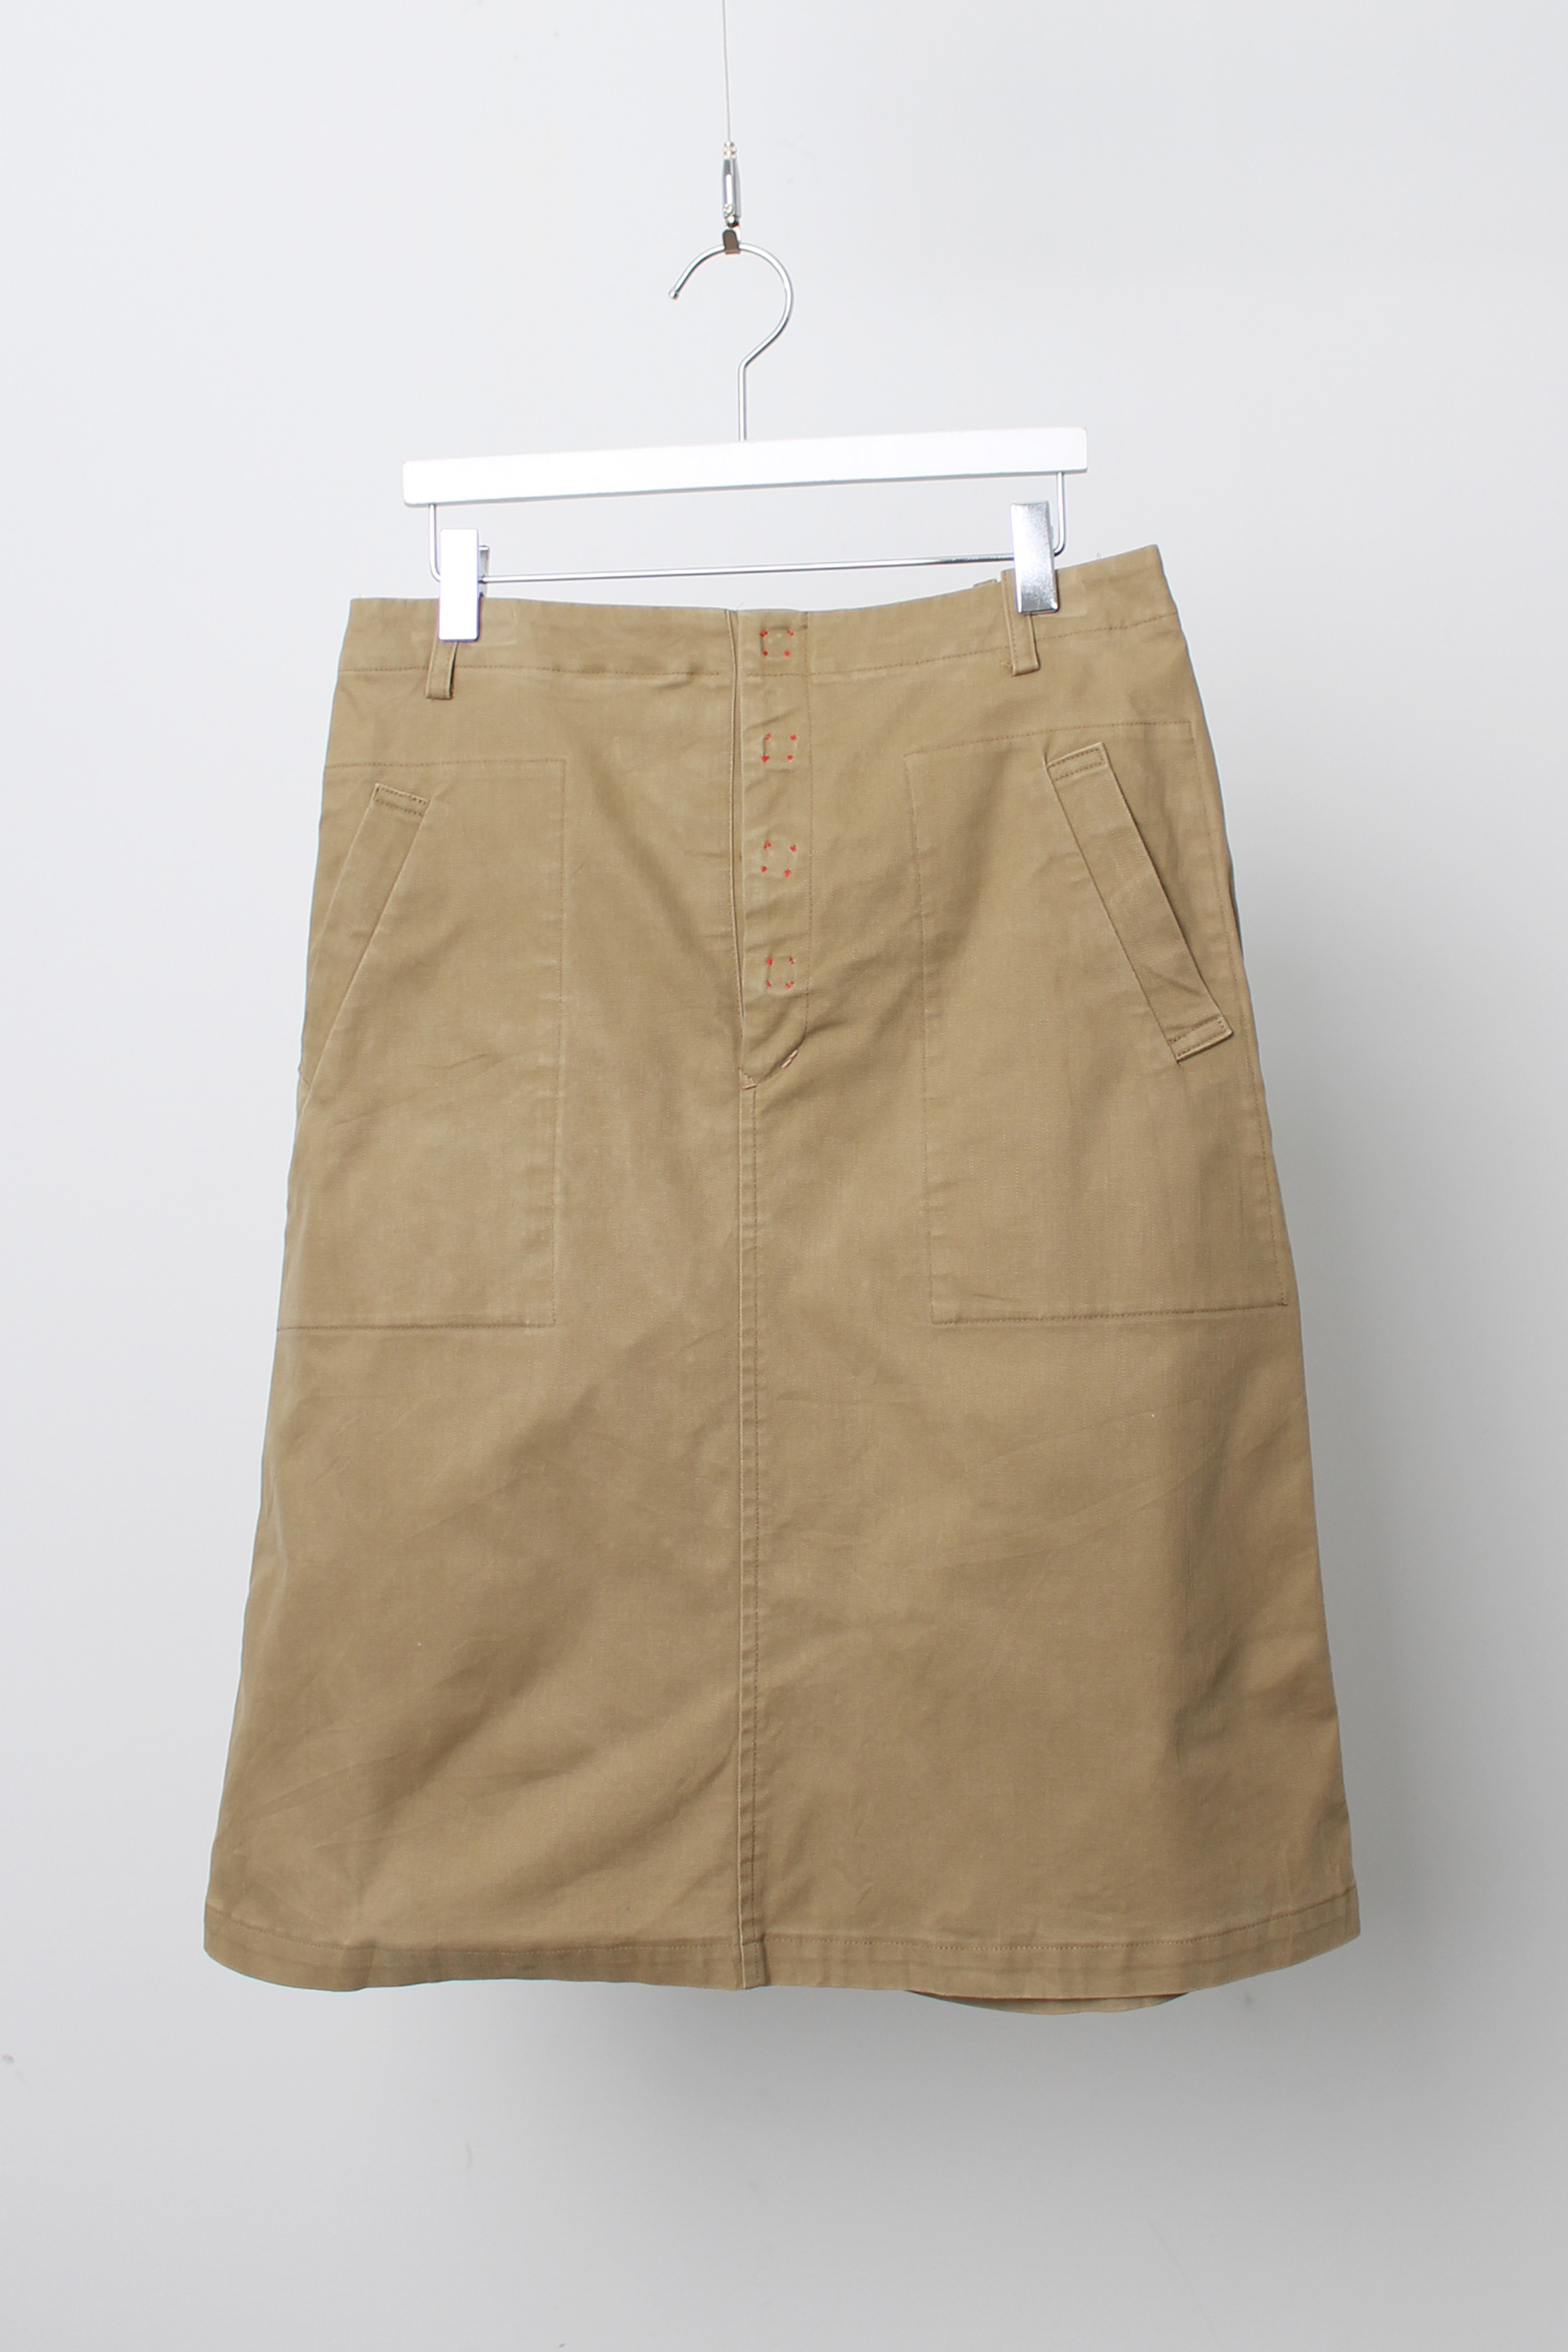 sunaokuwahara skirt